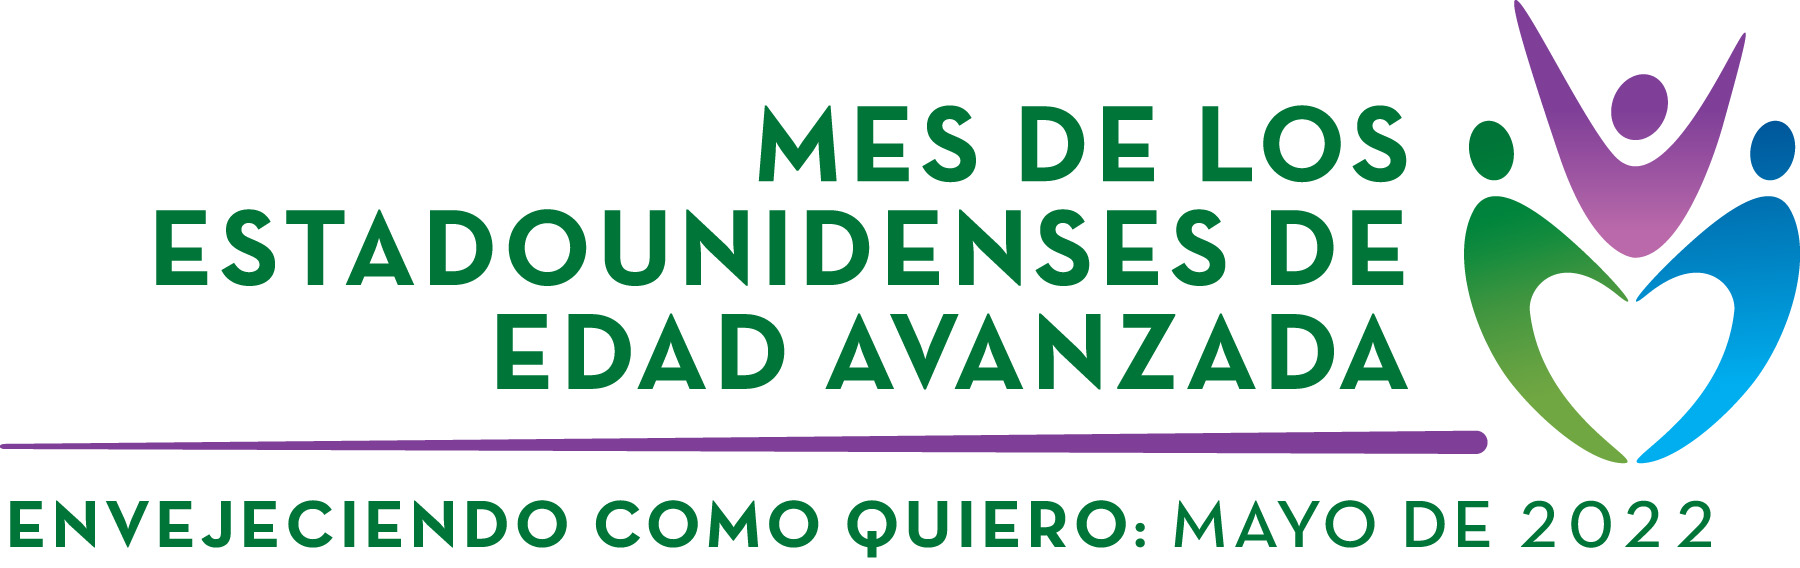 Spanish Logo: Mes De Los Estadounidenses De Edad Avanzada, Envejeciendo como quiero: Mayo 2022